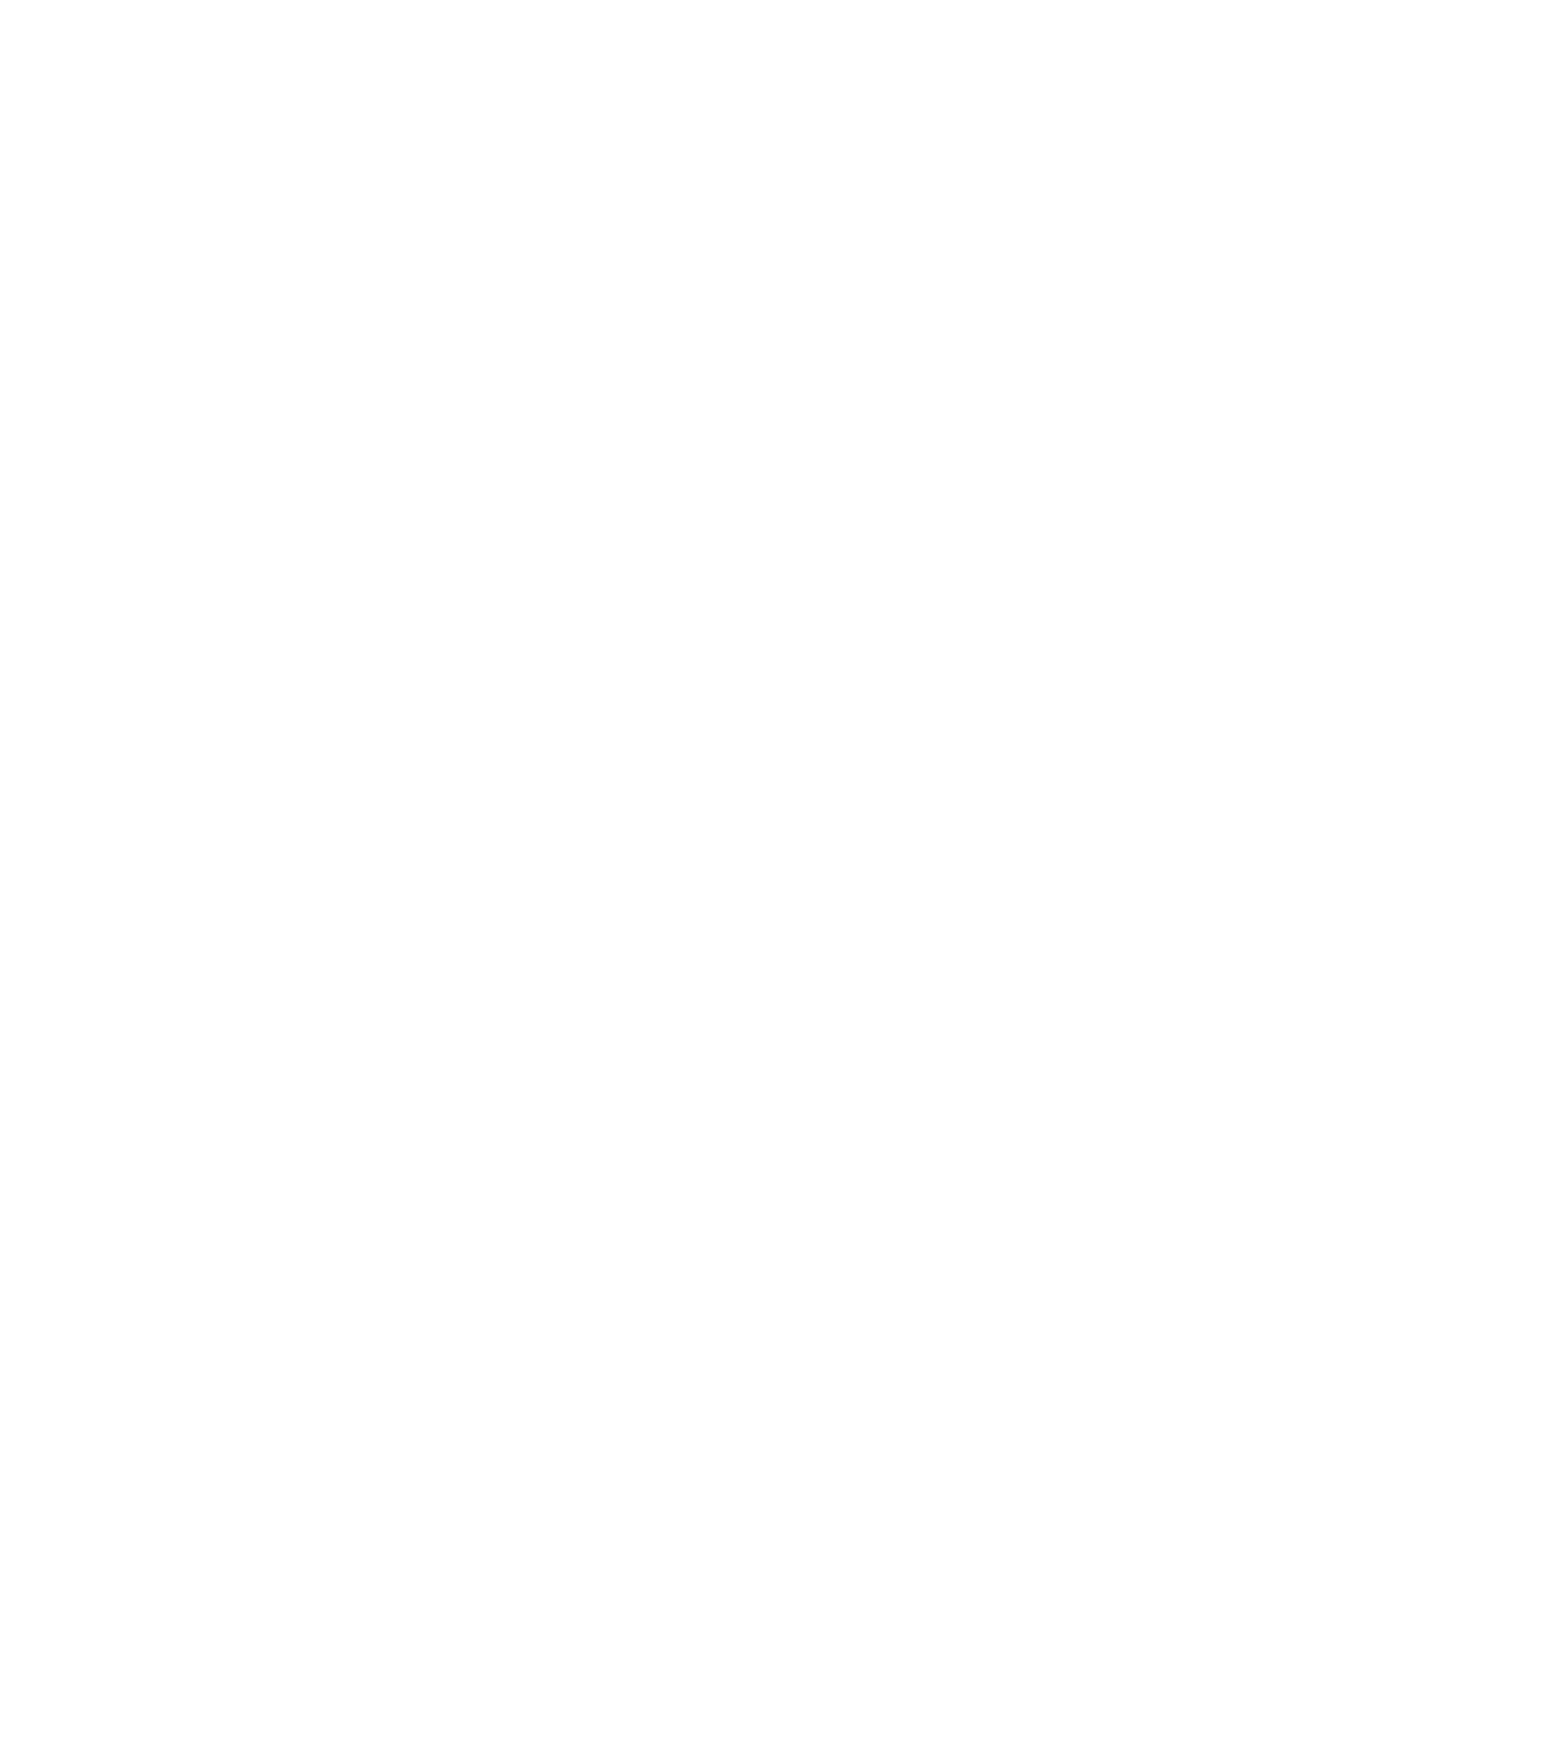 Zebra Technologies logo pour fonds sombres (PNG transparent)